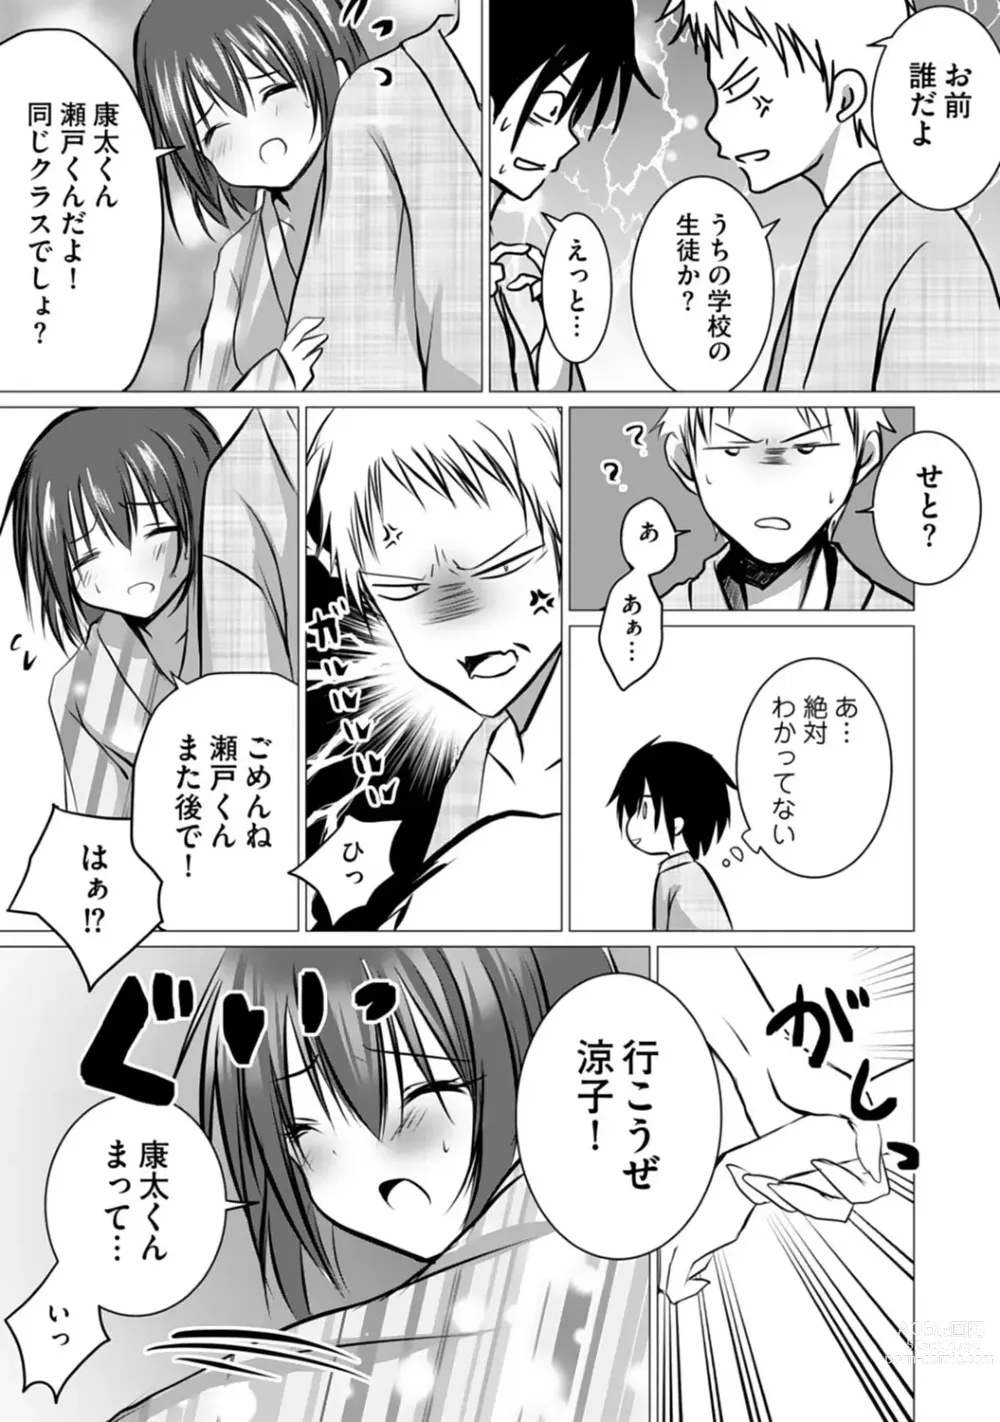 Page 98 of manga Bocchi no Boku demo, Kuzu no Yarichin ni Nareru tte Honto desu ka?